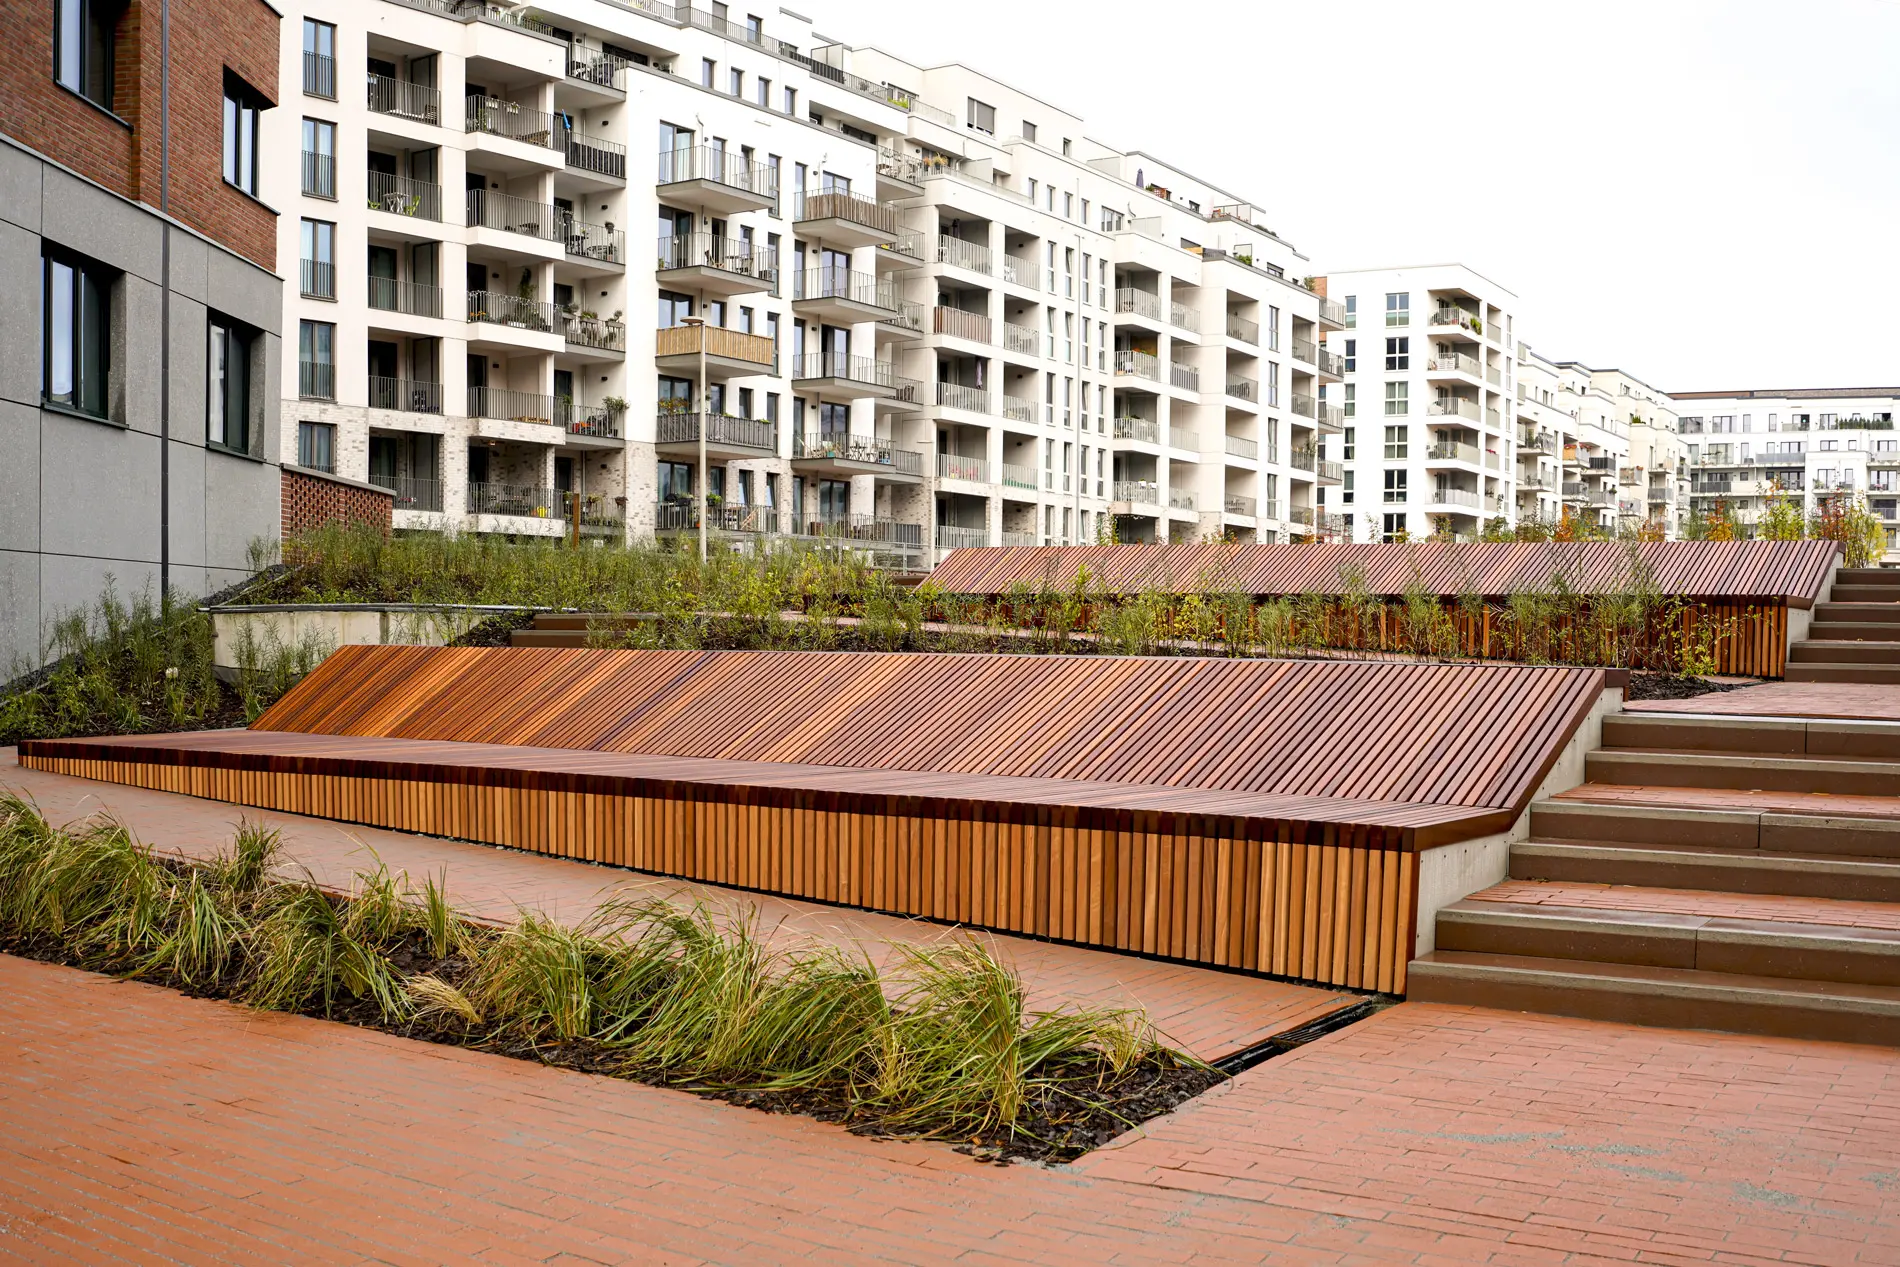 Moderne Stadtgestaltung direkt am Elbkanal – der Hamburger Sonninpark